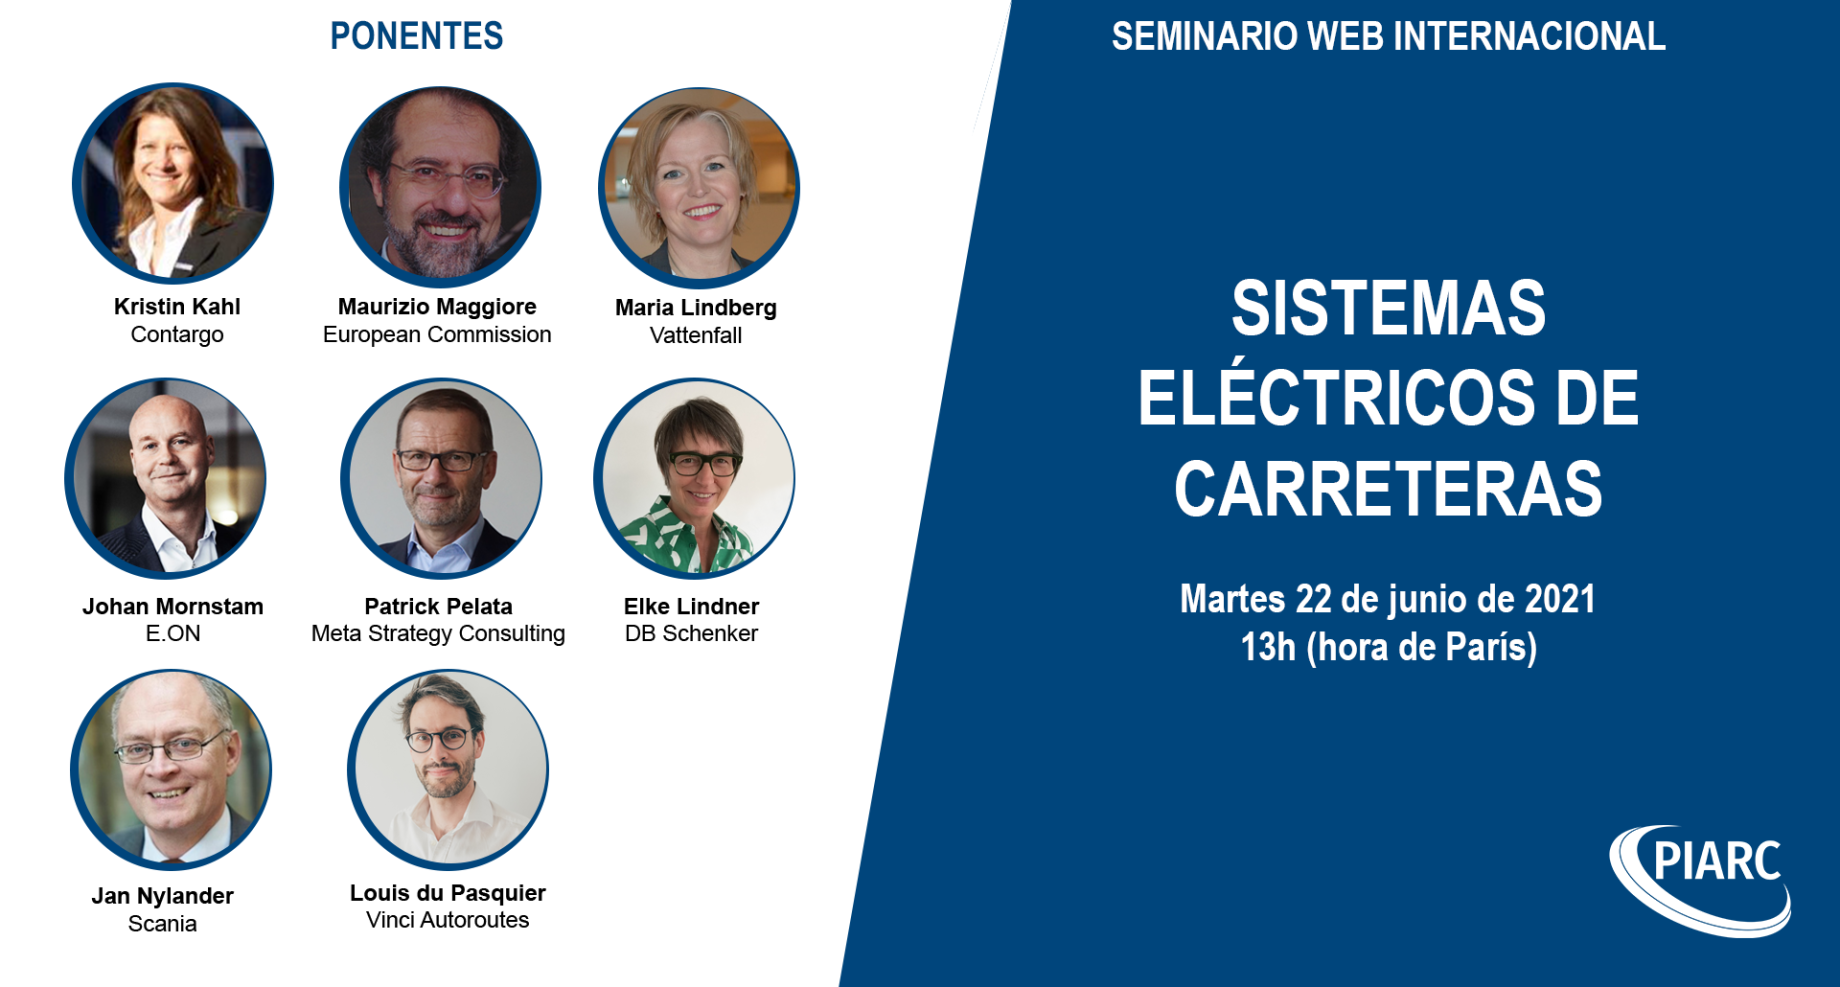 ¡Participe en el segundo seminario web de PIARC sobre los sistemas eléctricos de carreteras el 22 de junio!